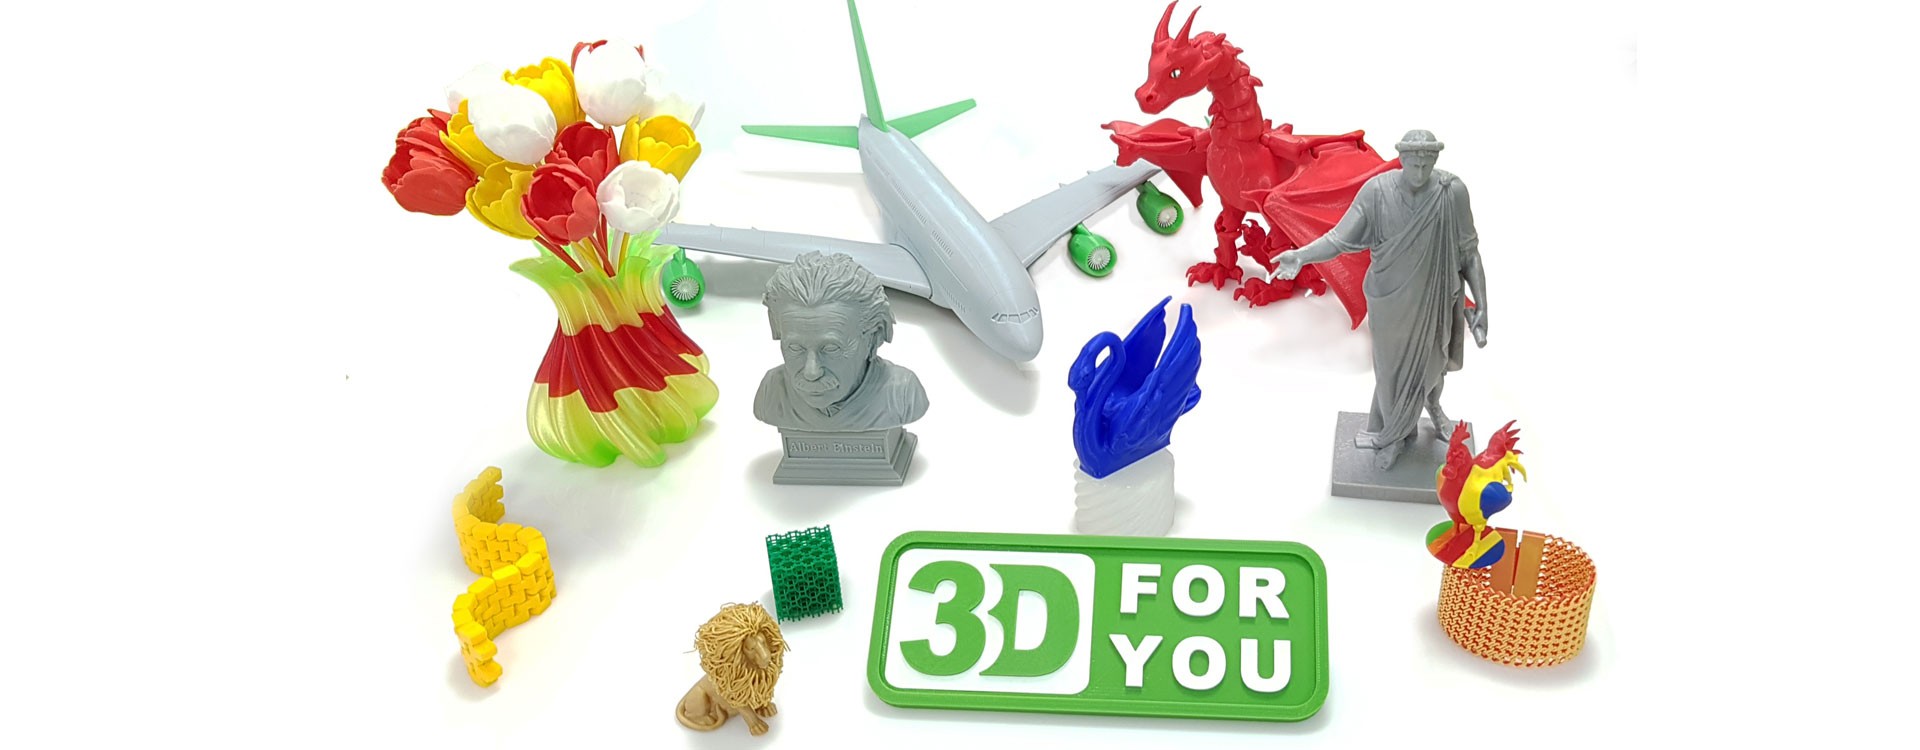 Что можно изготовить с помощью 3D-принтера?